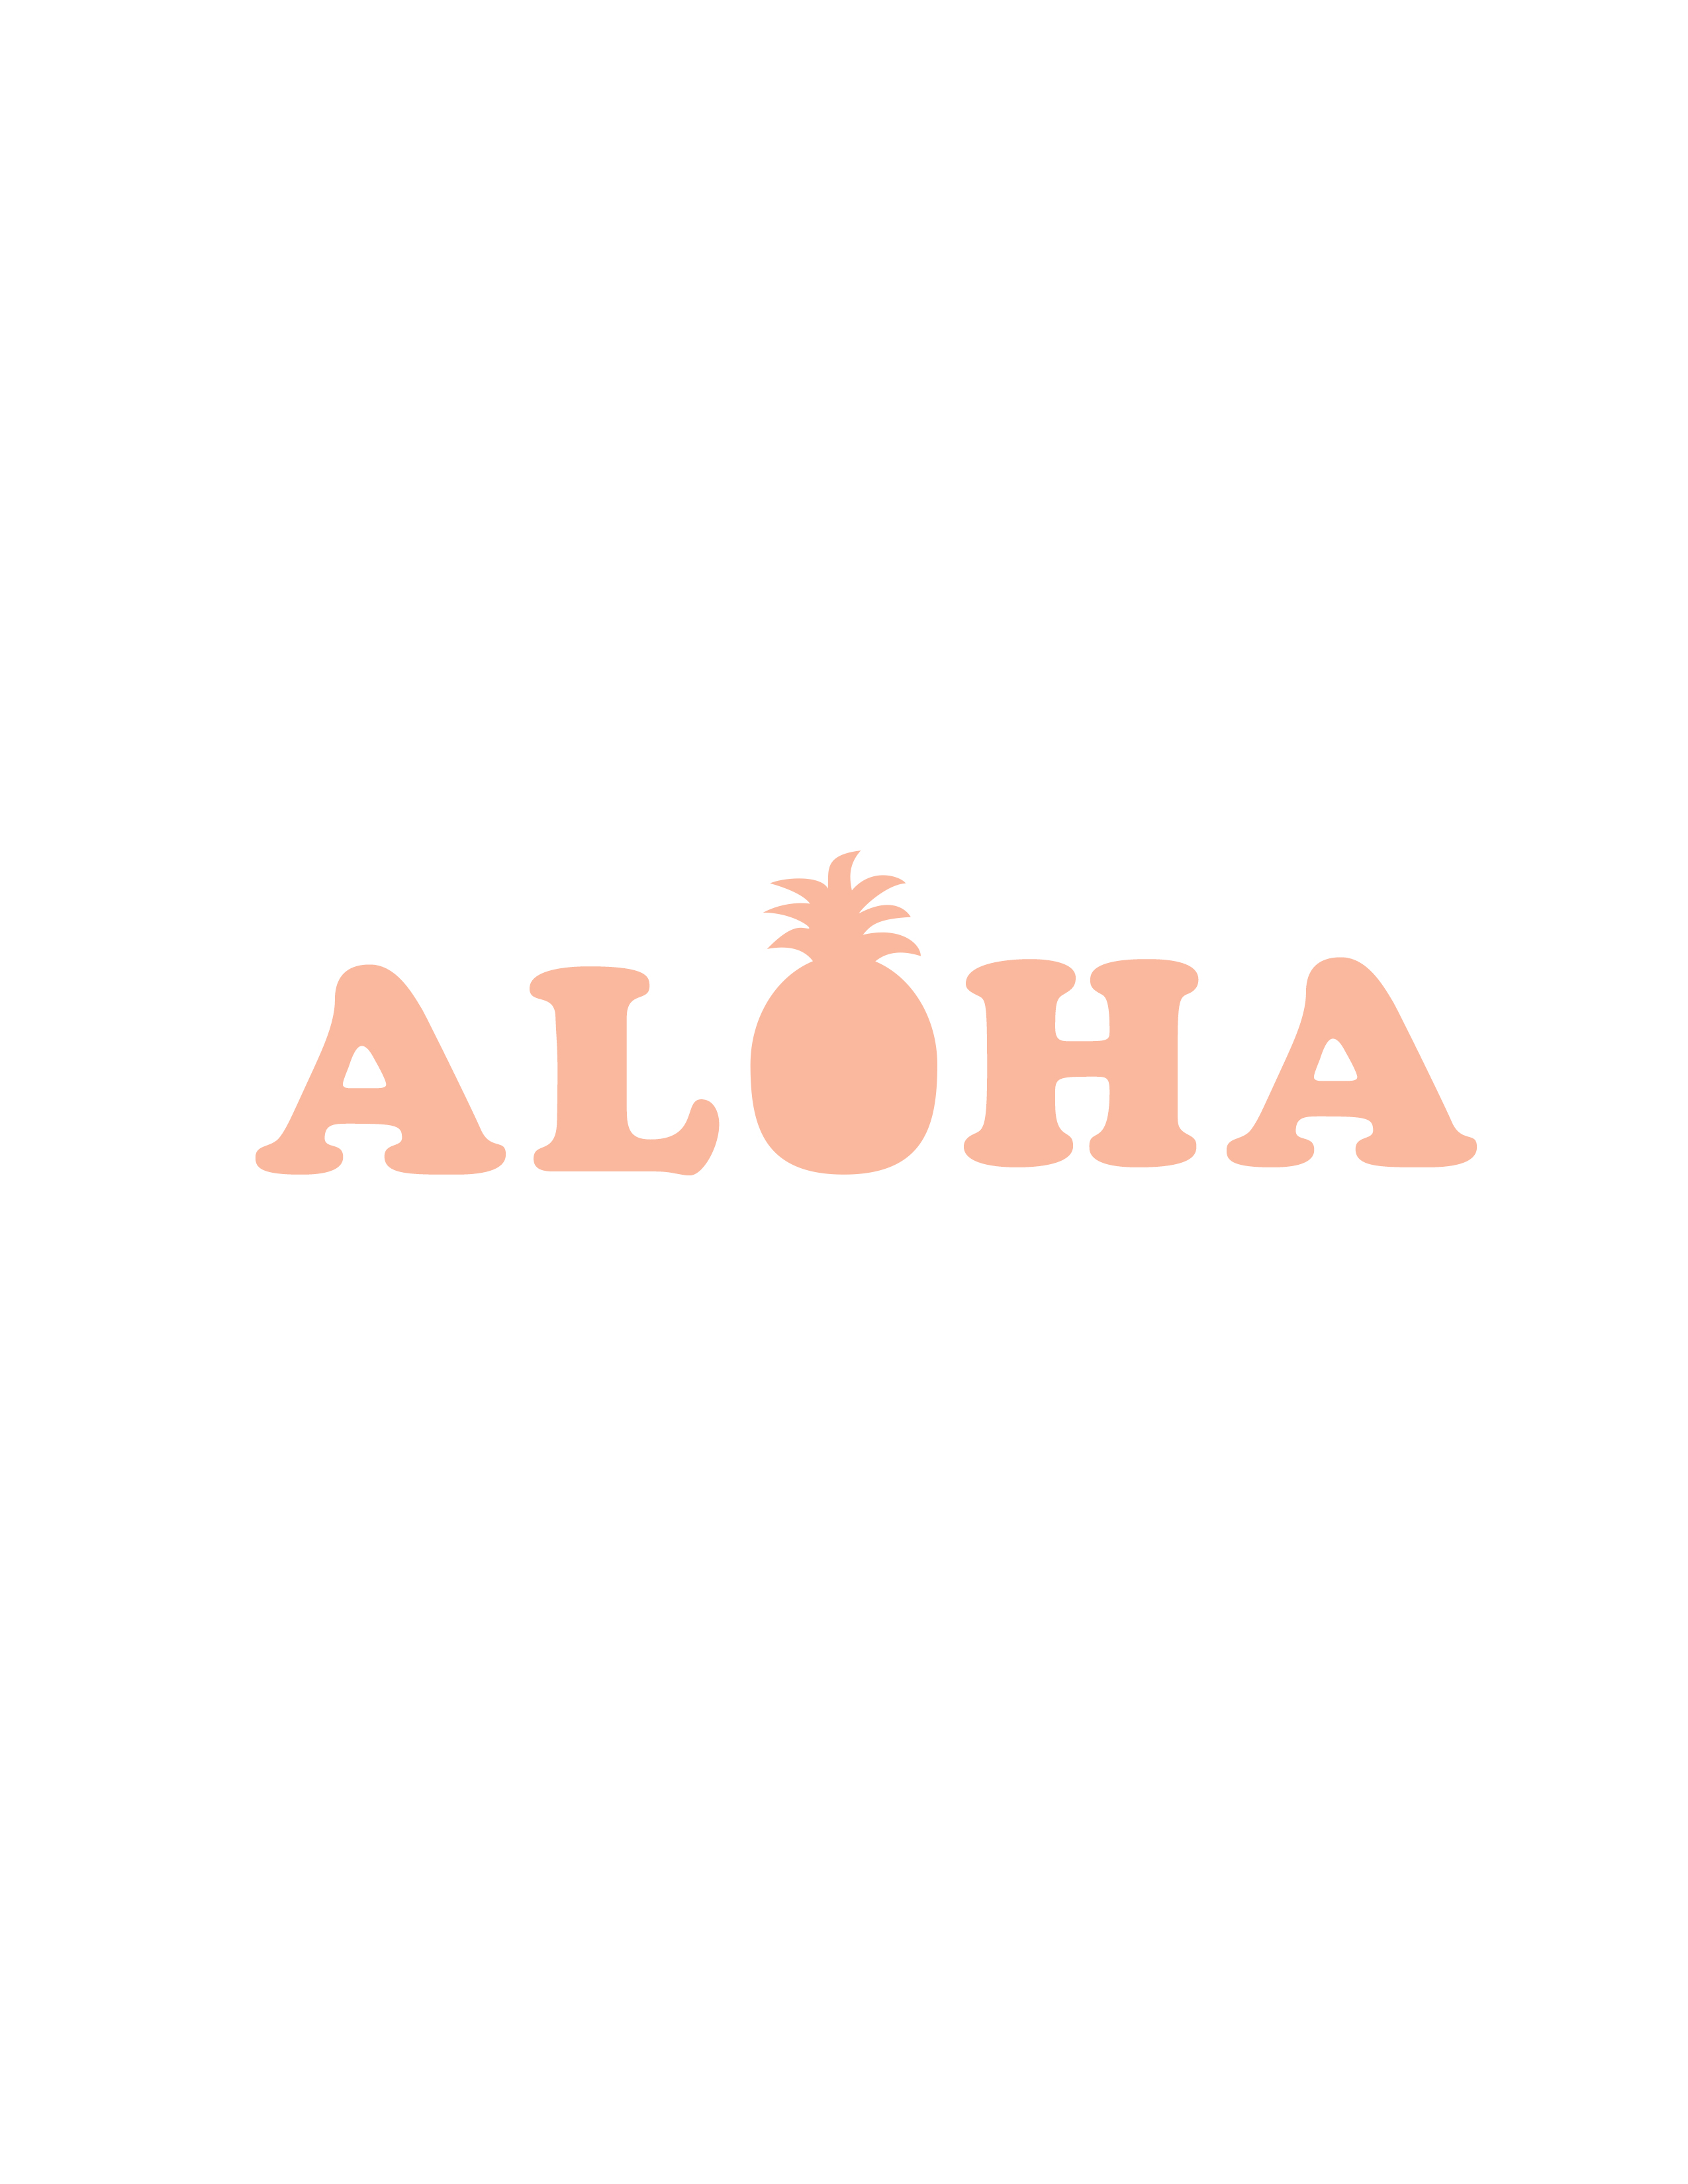 aloha printable with pineapple